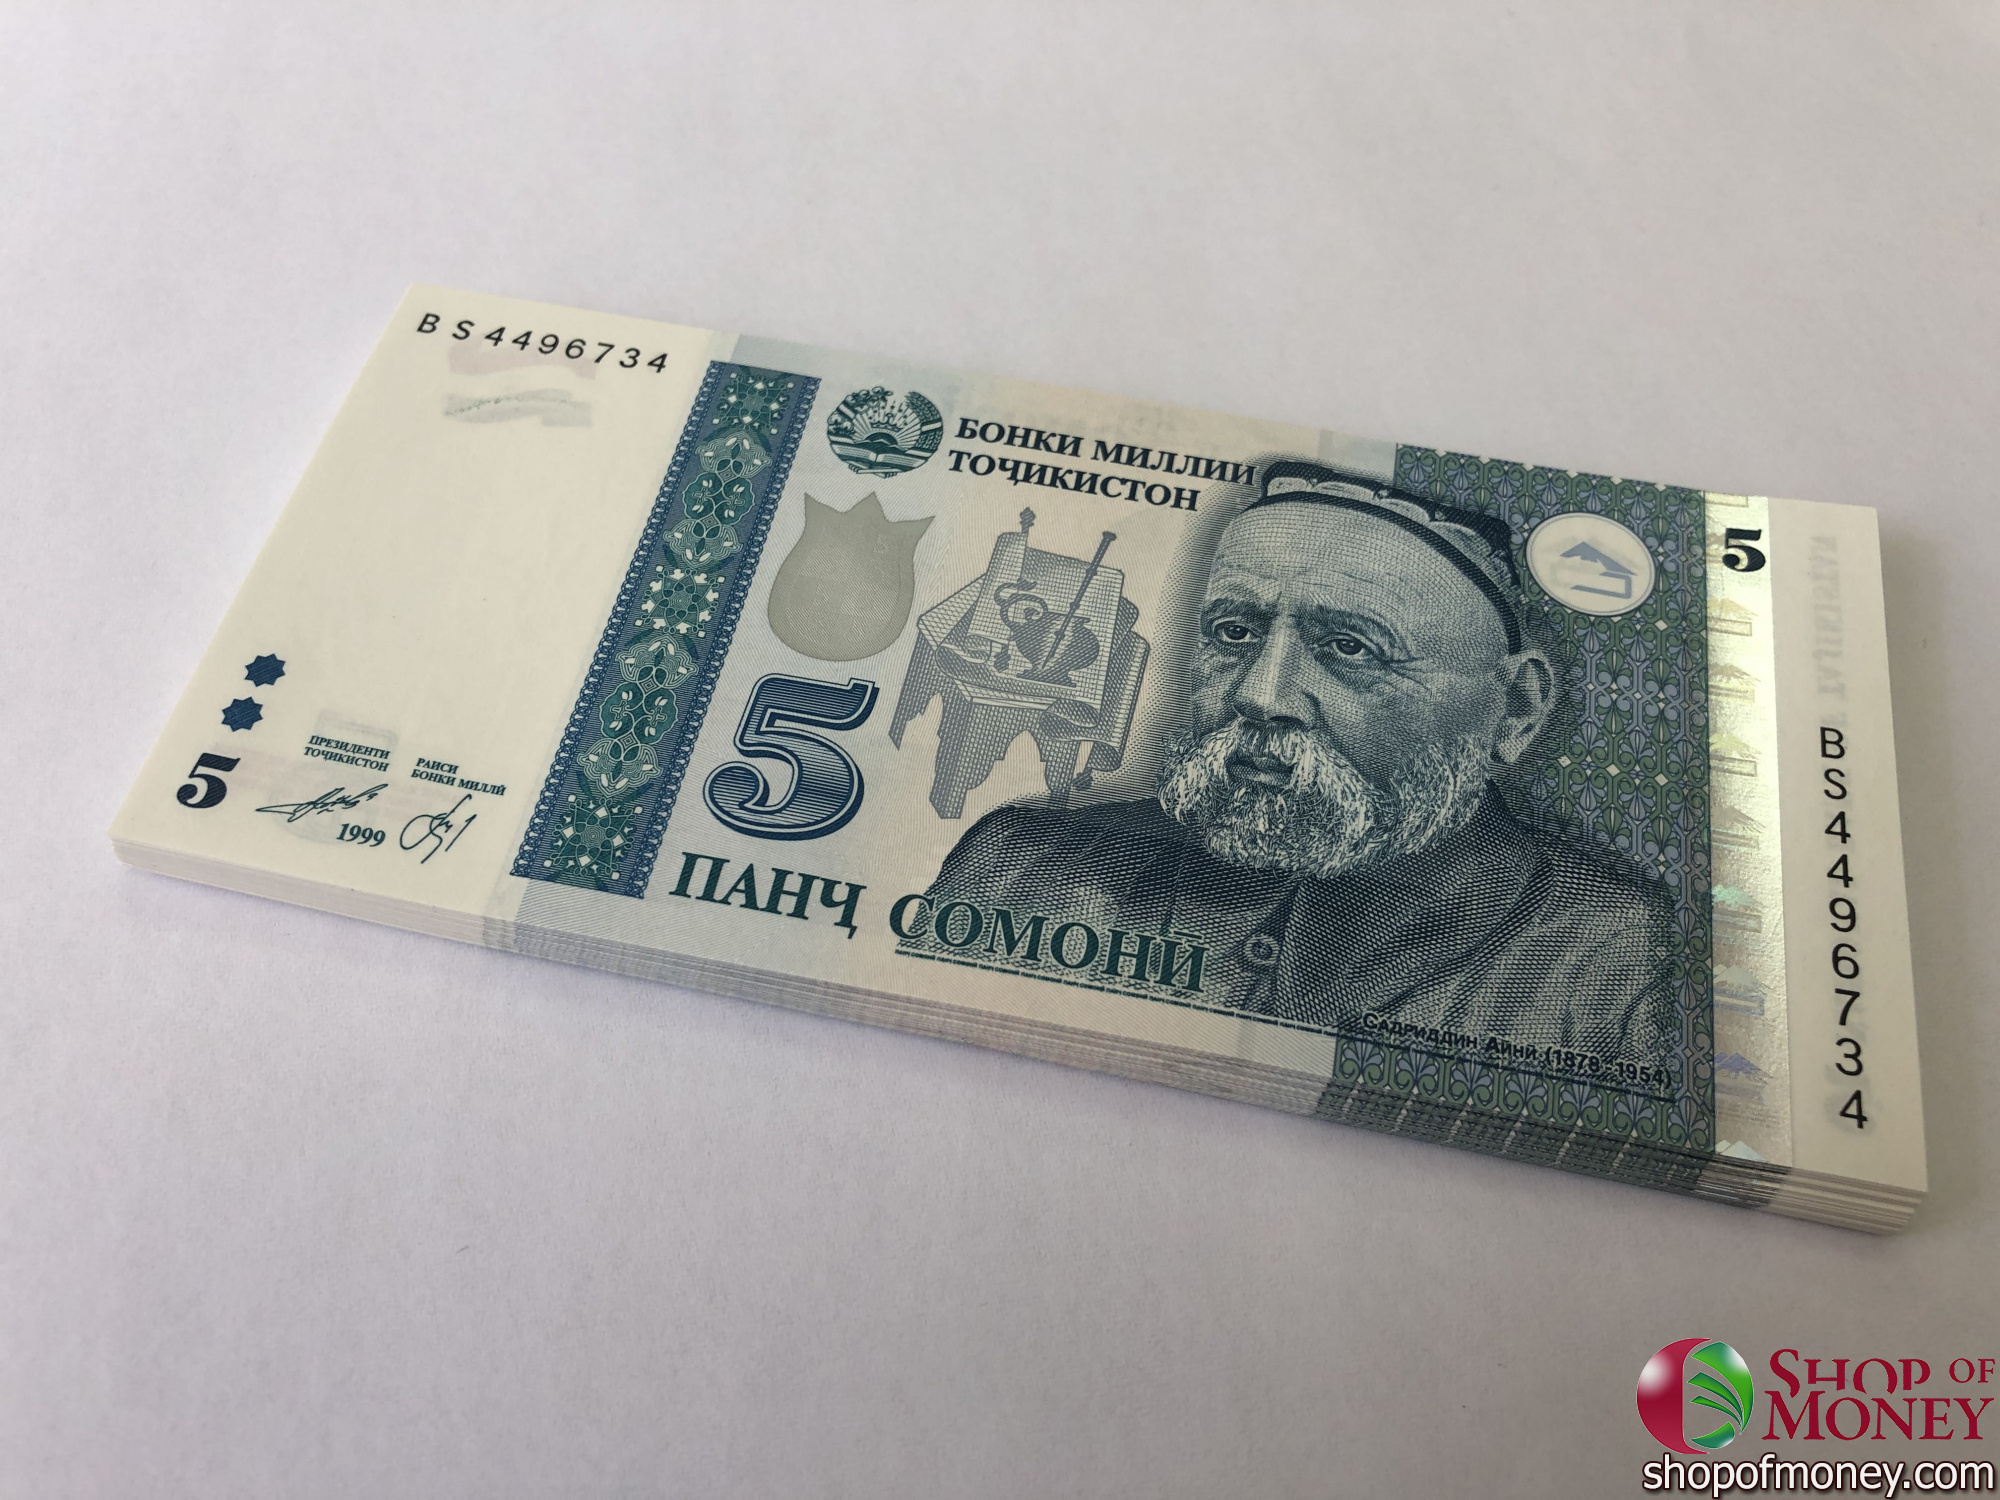 5 сомони в рублях. Купюры Таджикистана. Купюра Сомони. Банкнота 50 Сомони. Таджикский Сомони.